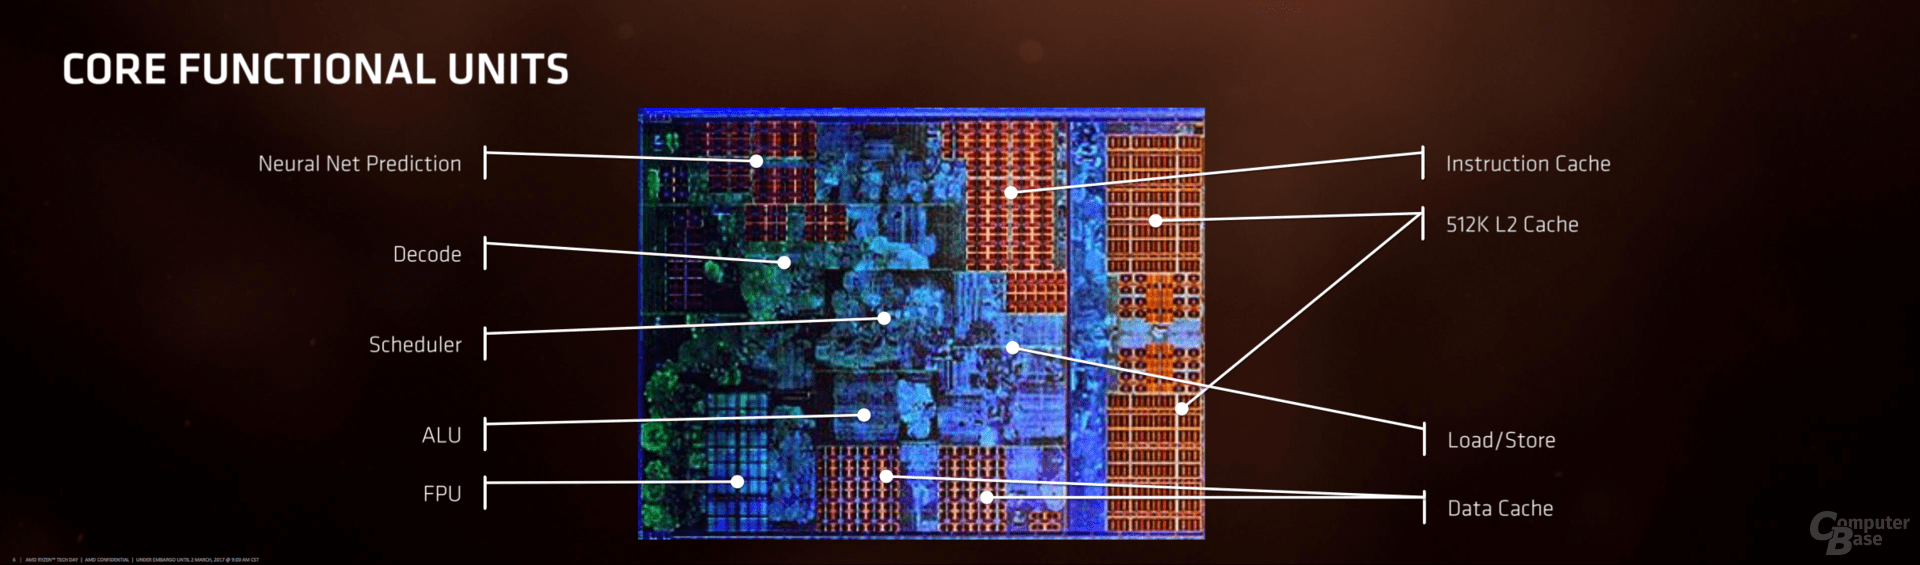 AMD Ryzen im Test (Architektur)